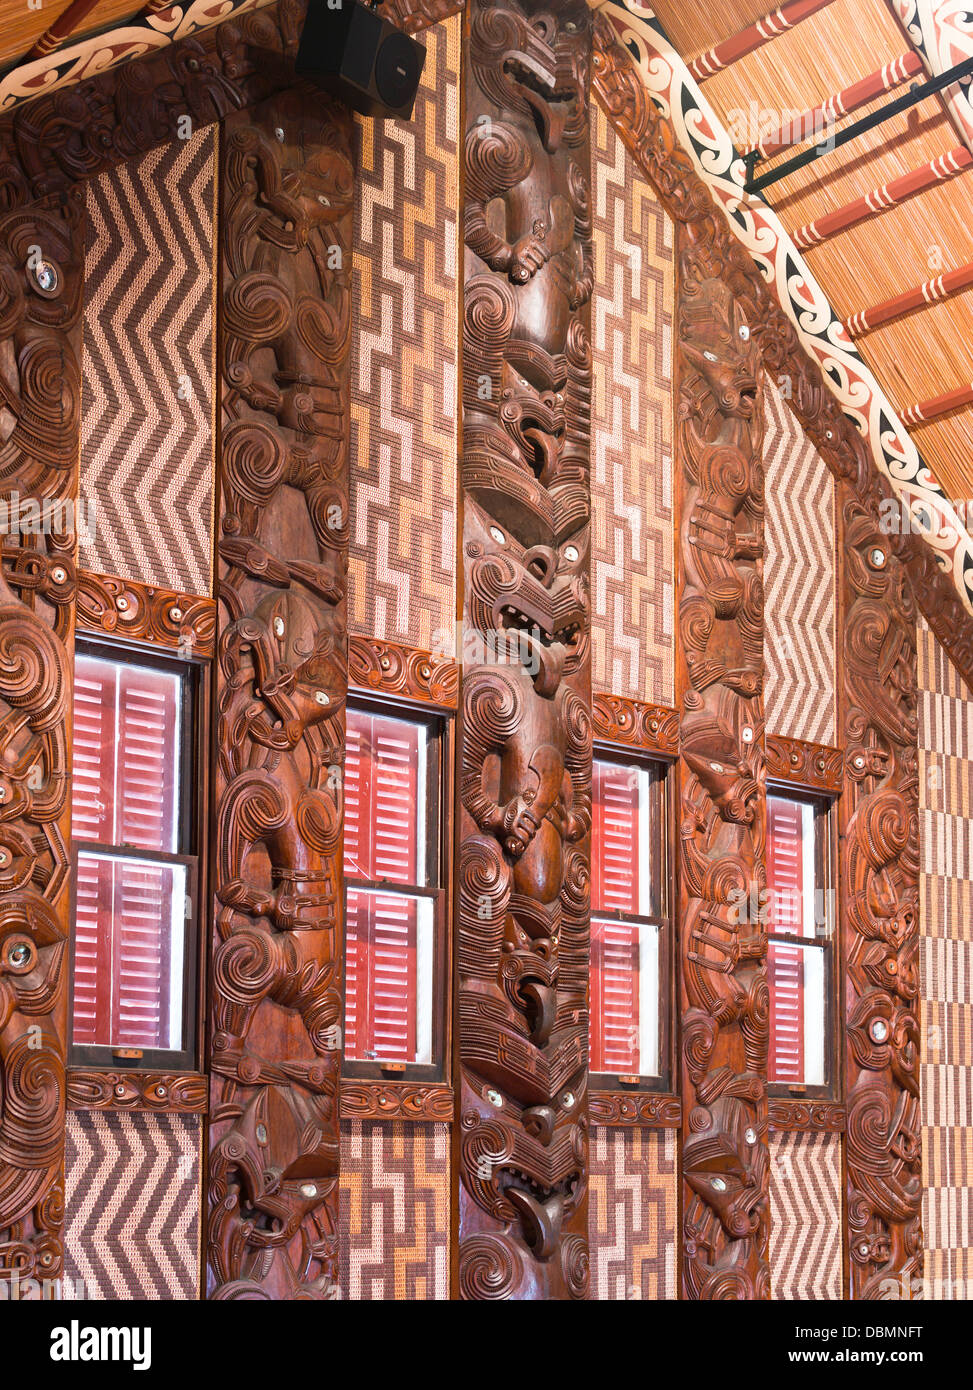 Dh Waitangi Treaty Grounds BUCHT DER INSELN NEUSEELAND Whare Runanga Innenraum Maori Meeting House Schnitzereien Schnitzerei marae Kultur Stockfoto